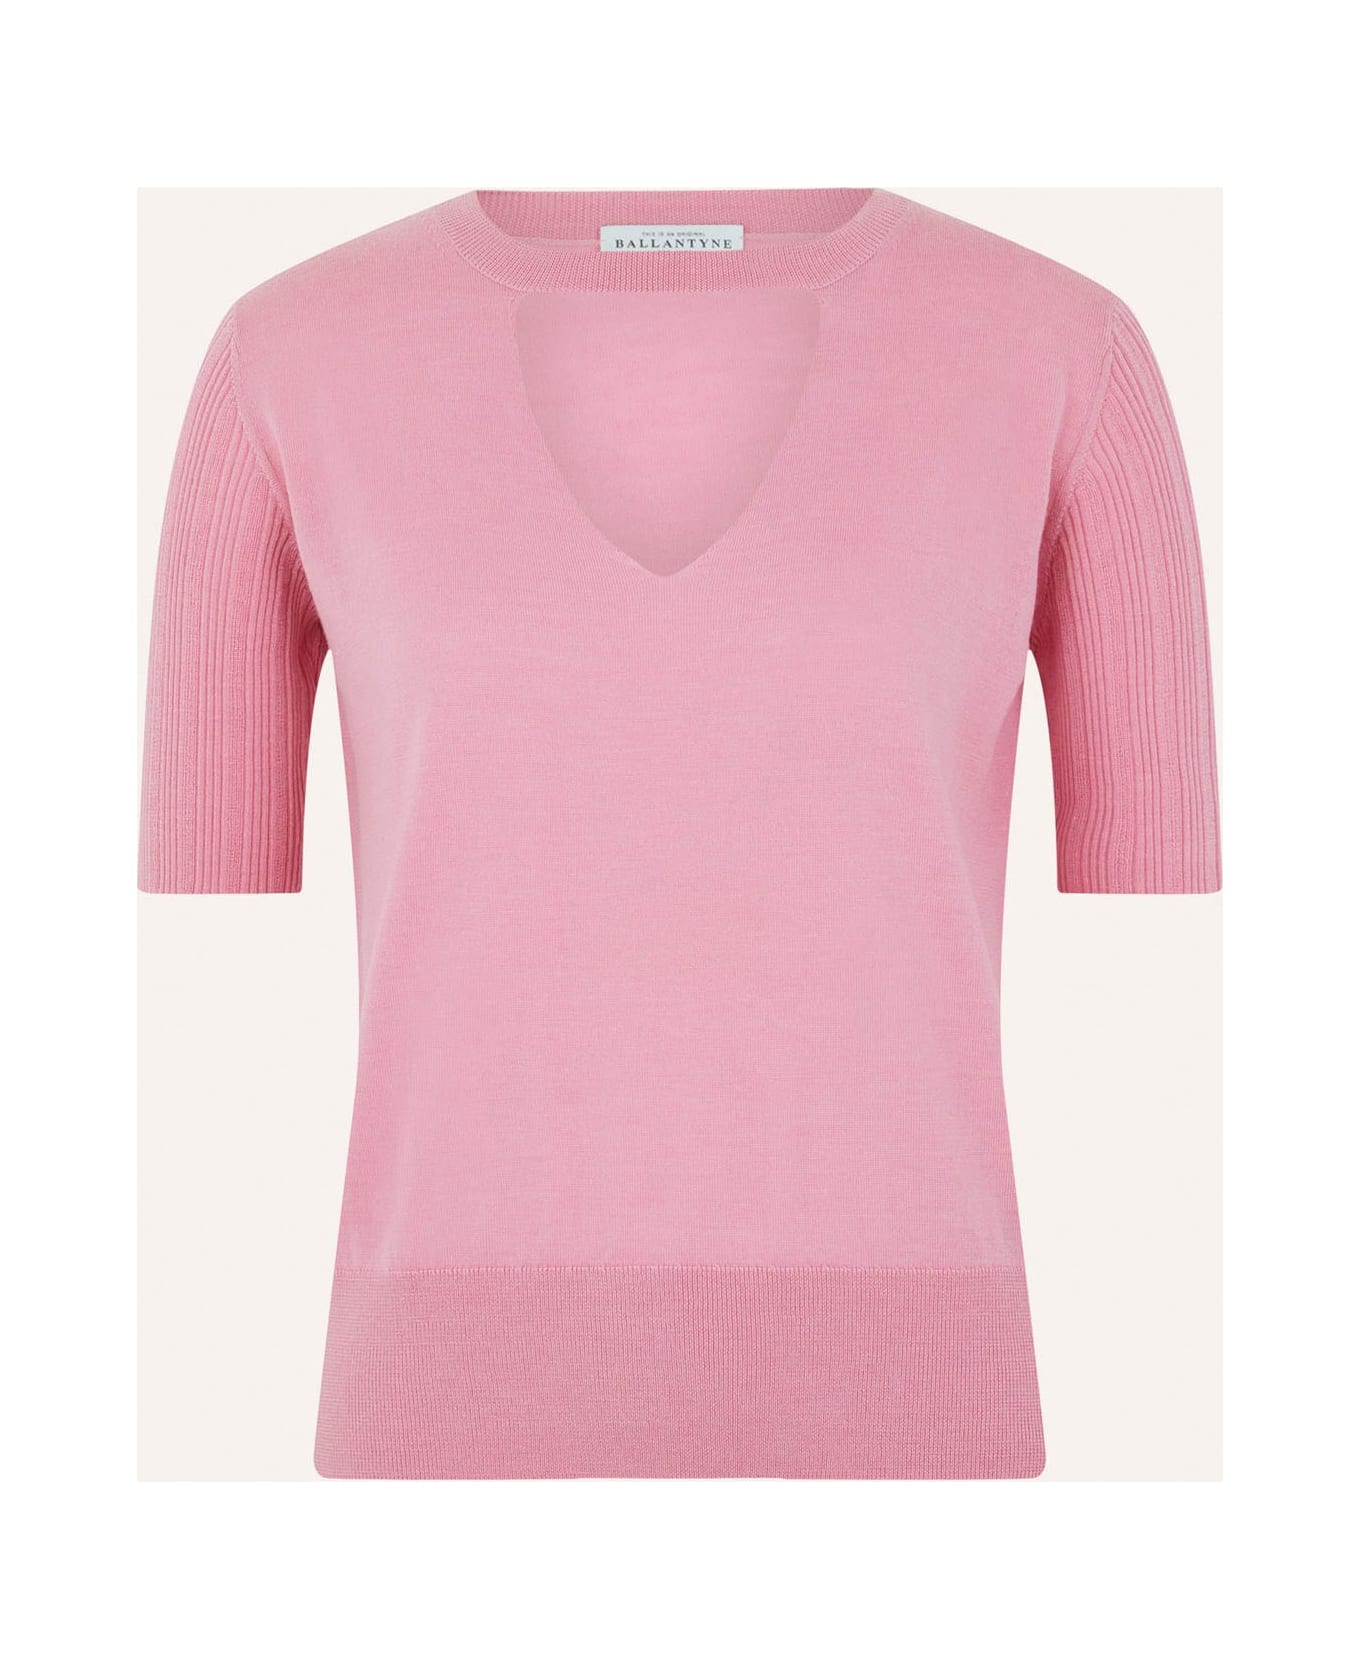 Ballantyne Cut-out Basolan Shirt - Pink